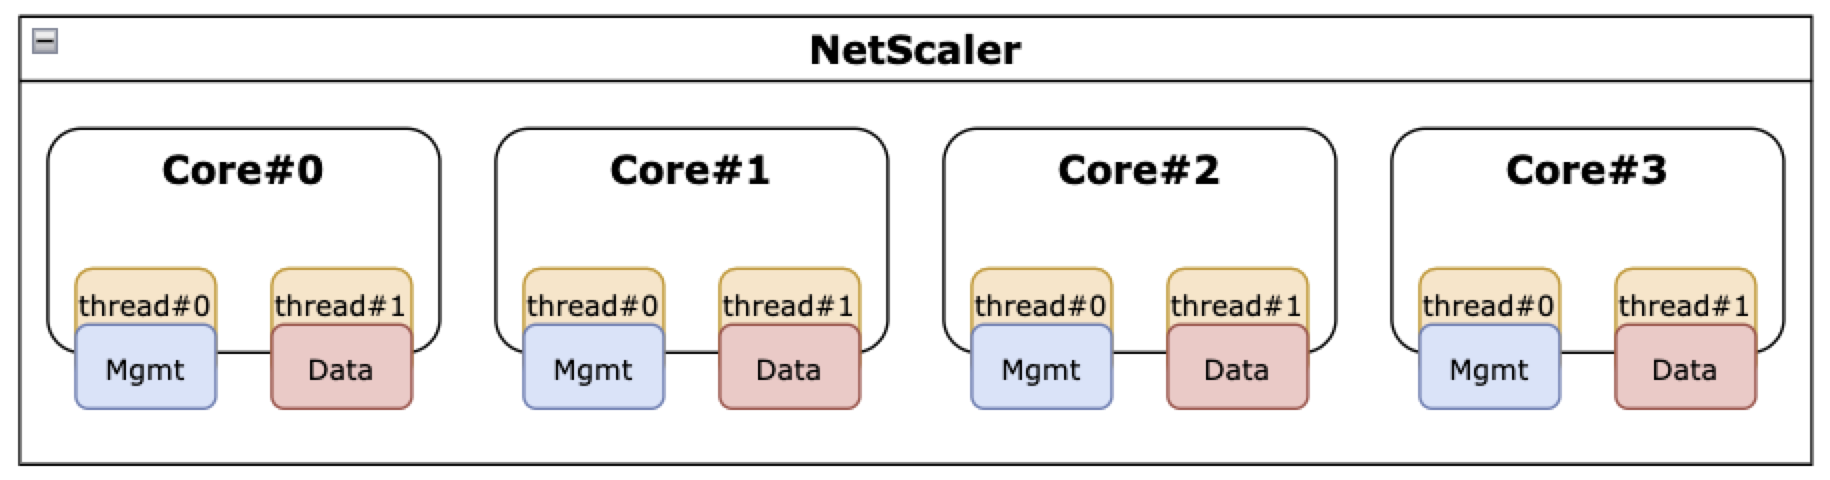 NetScaler con función SMT habilitada